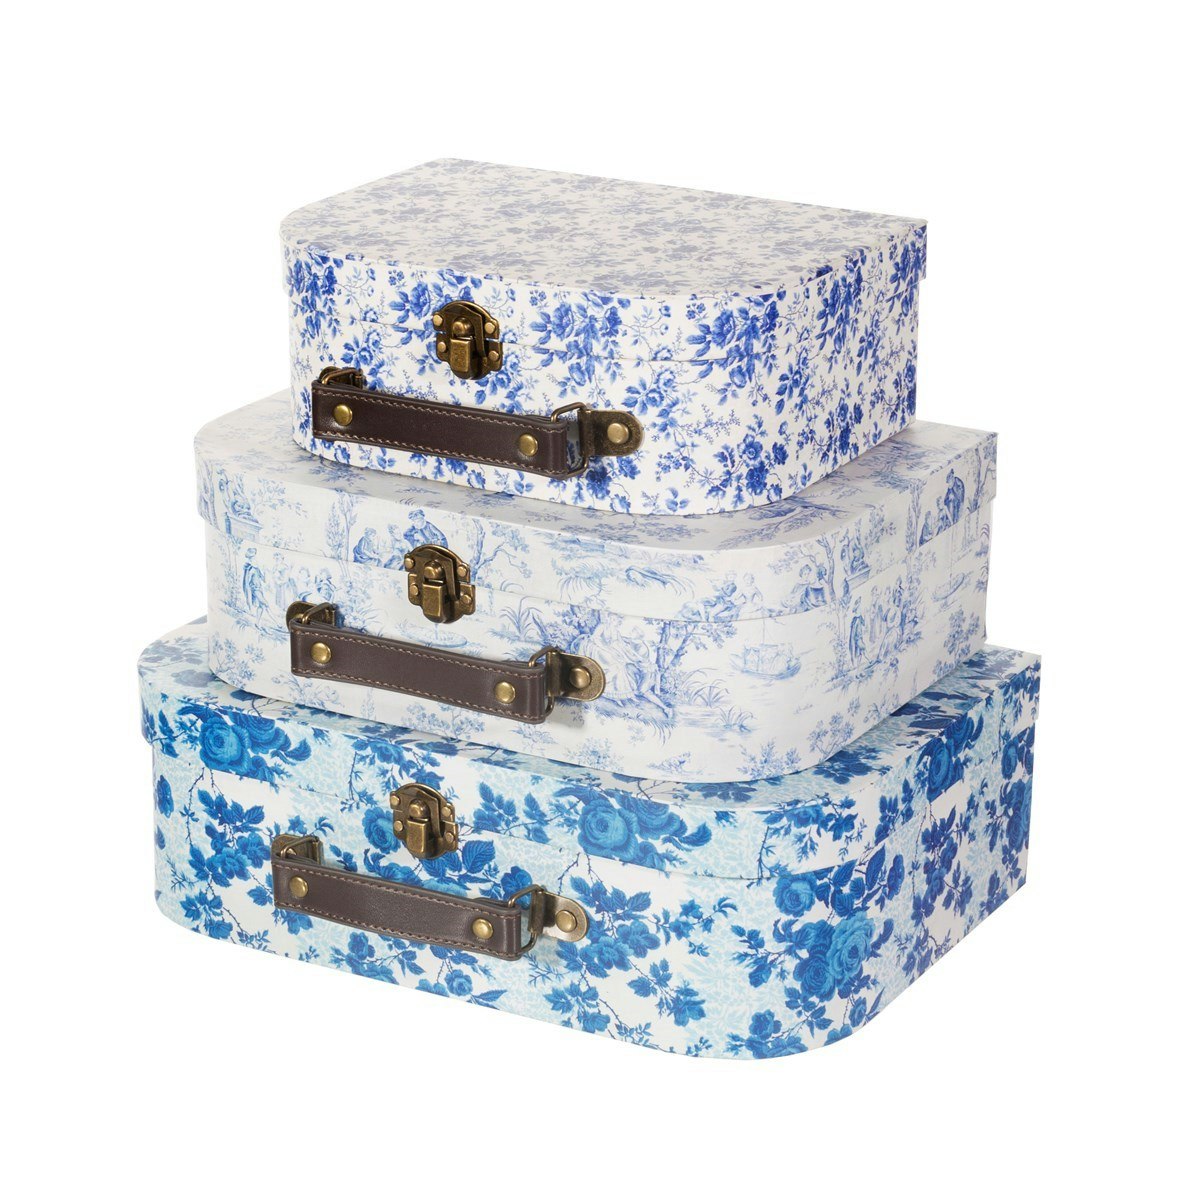 Sass & Belle, förvaringslådor Blue and white floral, 3-pack 